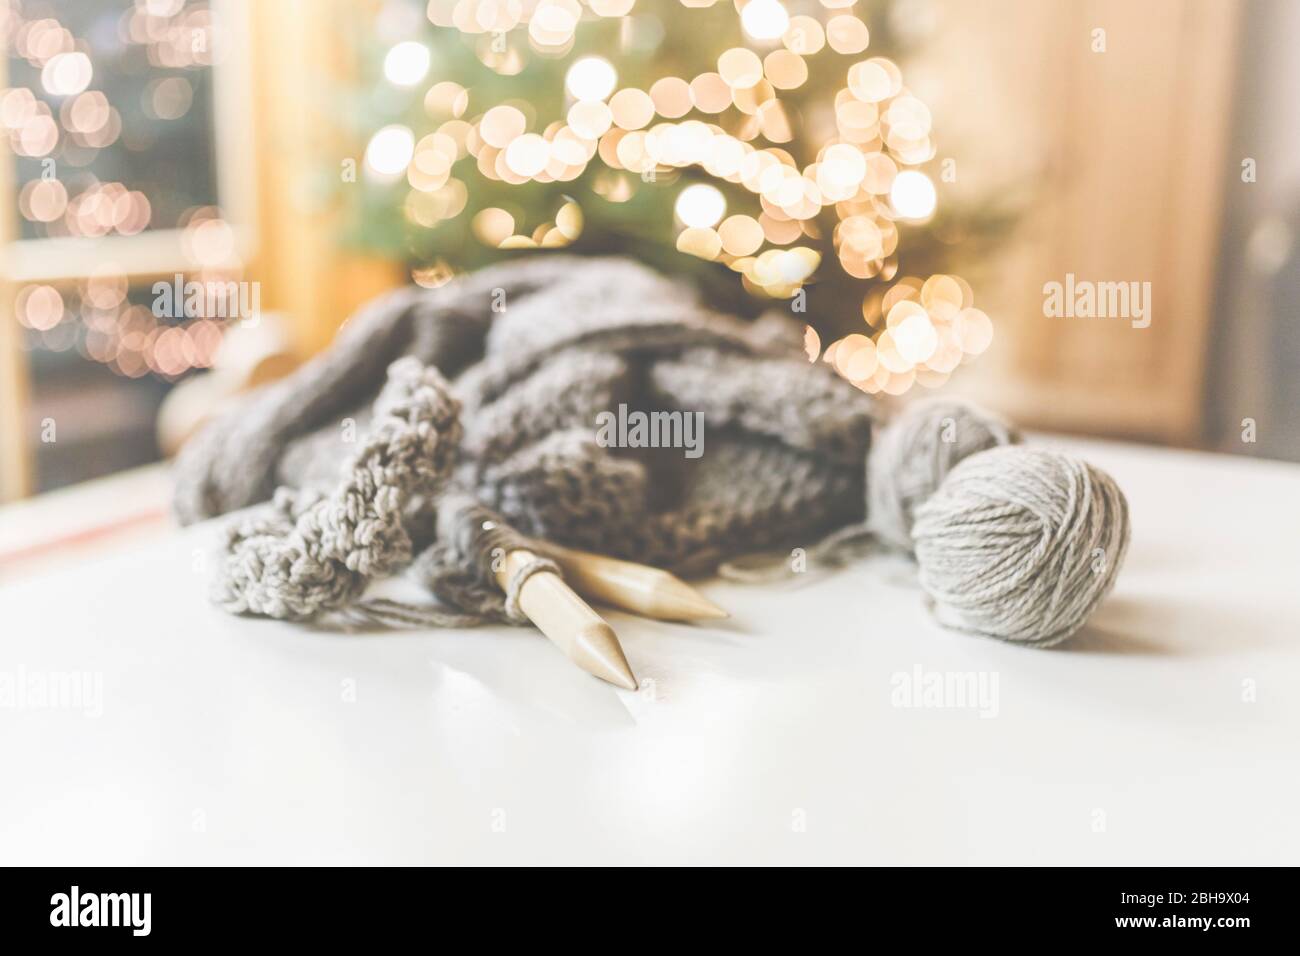 Gemütliches Weihnachten mit schöner Beleuchtung und dem Strickzeug mit großen Nadeln und schöner Wolle. Stock Photo